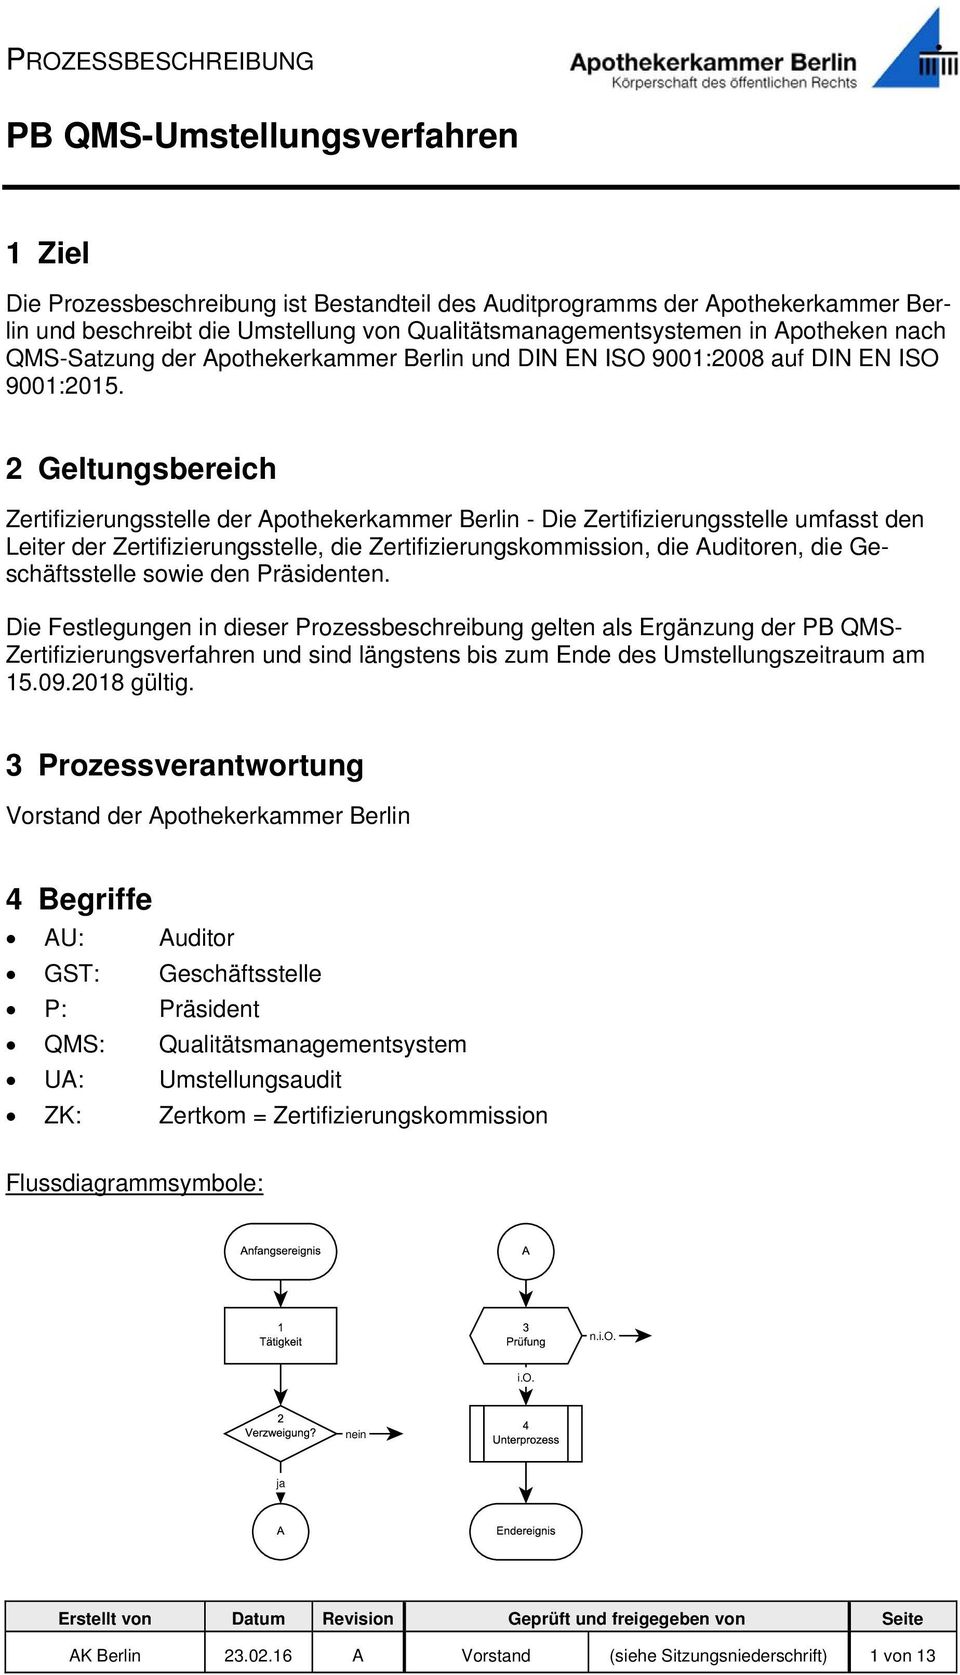 2 Geltungsbereich Zertifizierungsstelle der Apothekerkammer Berlin - Die Zertifizierungsstelle umfasst den Leiter der Zertifizierungsstelle, die Zertifizierungskommission, die Auditoren, die